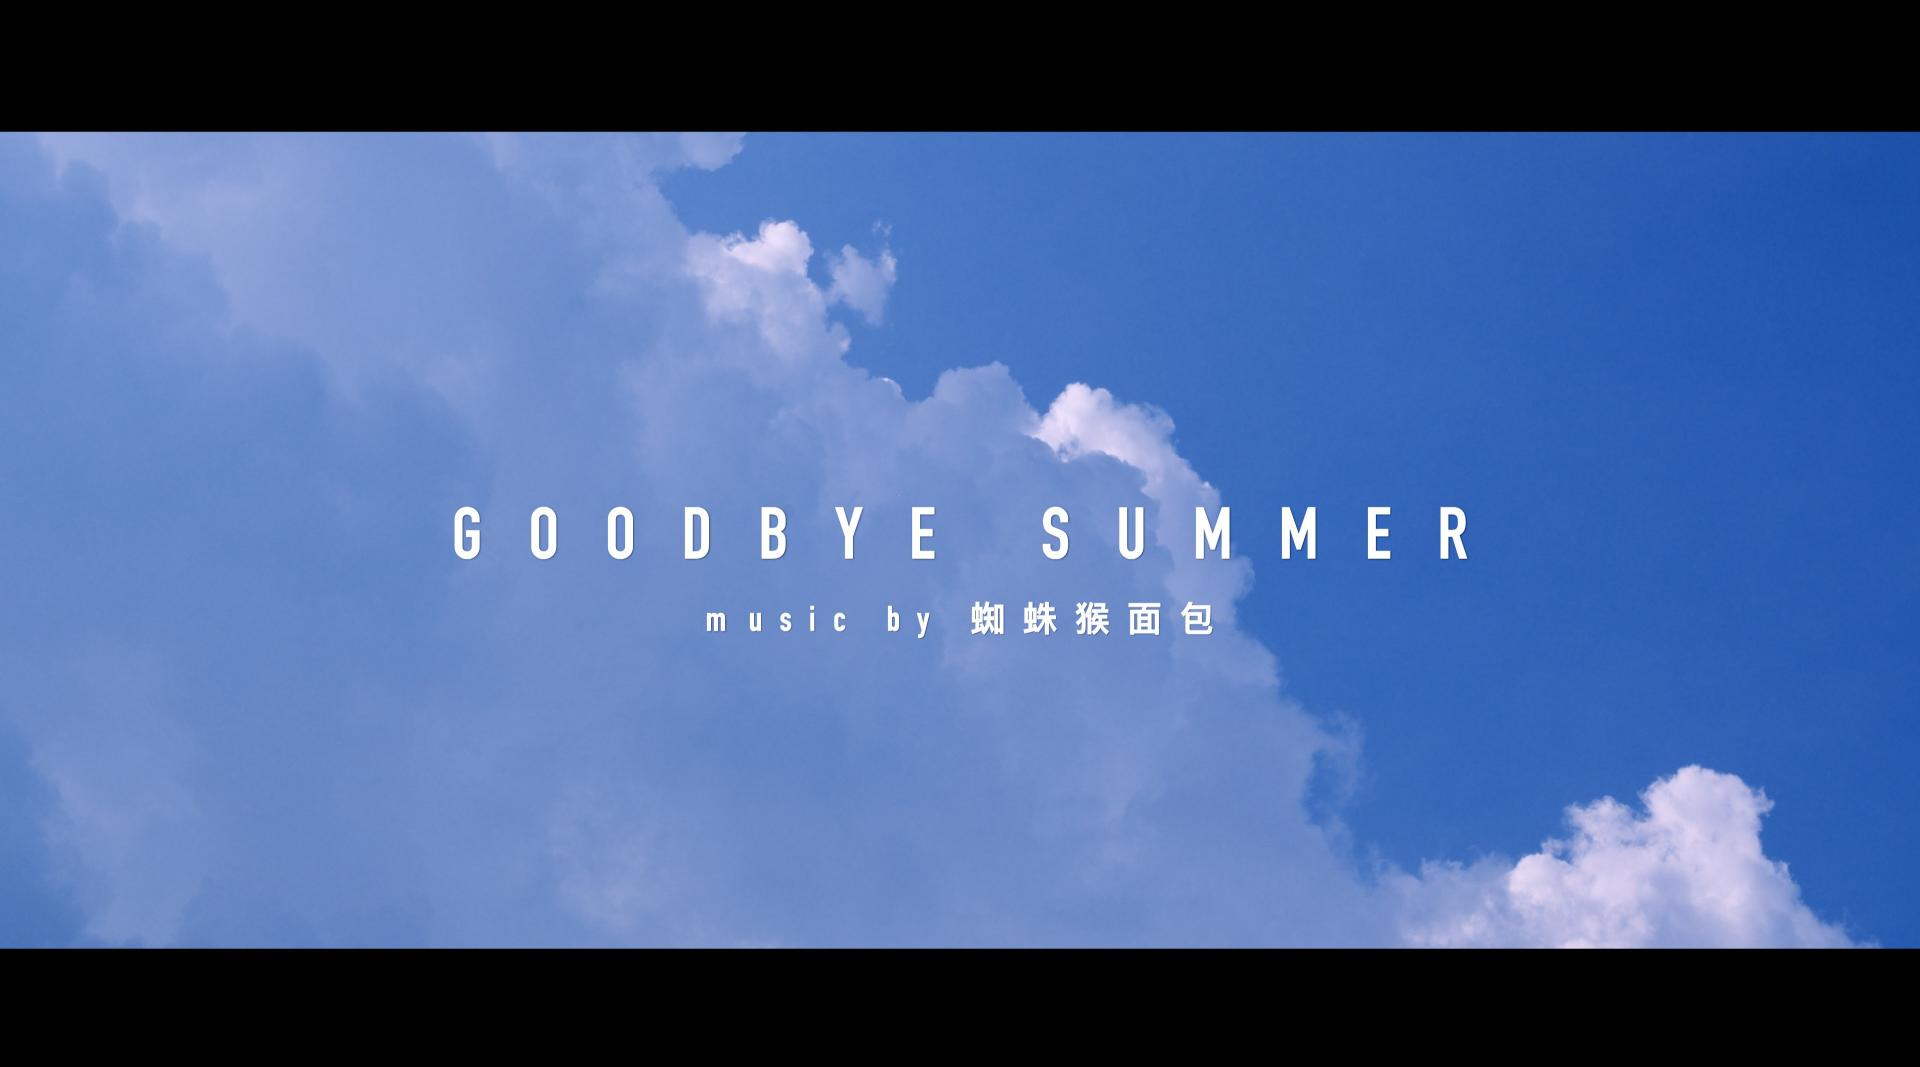 再见夏日-goodbye summer